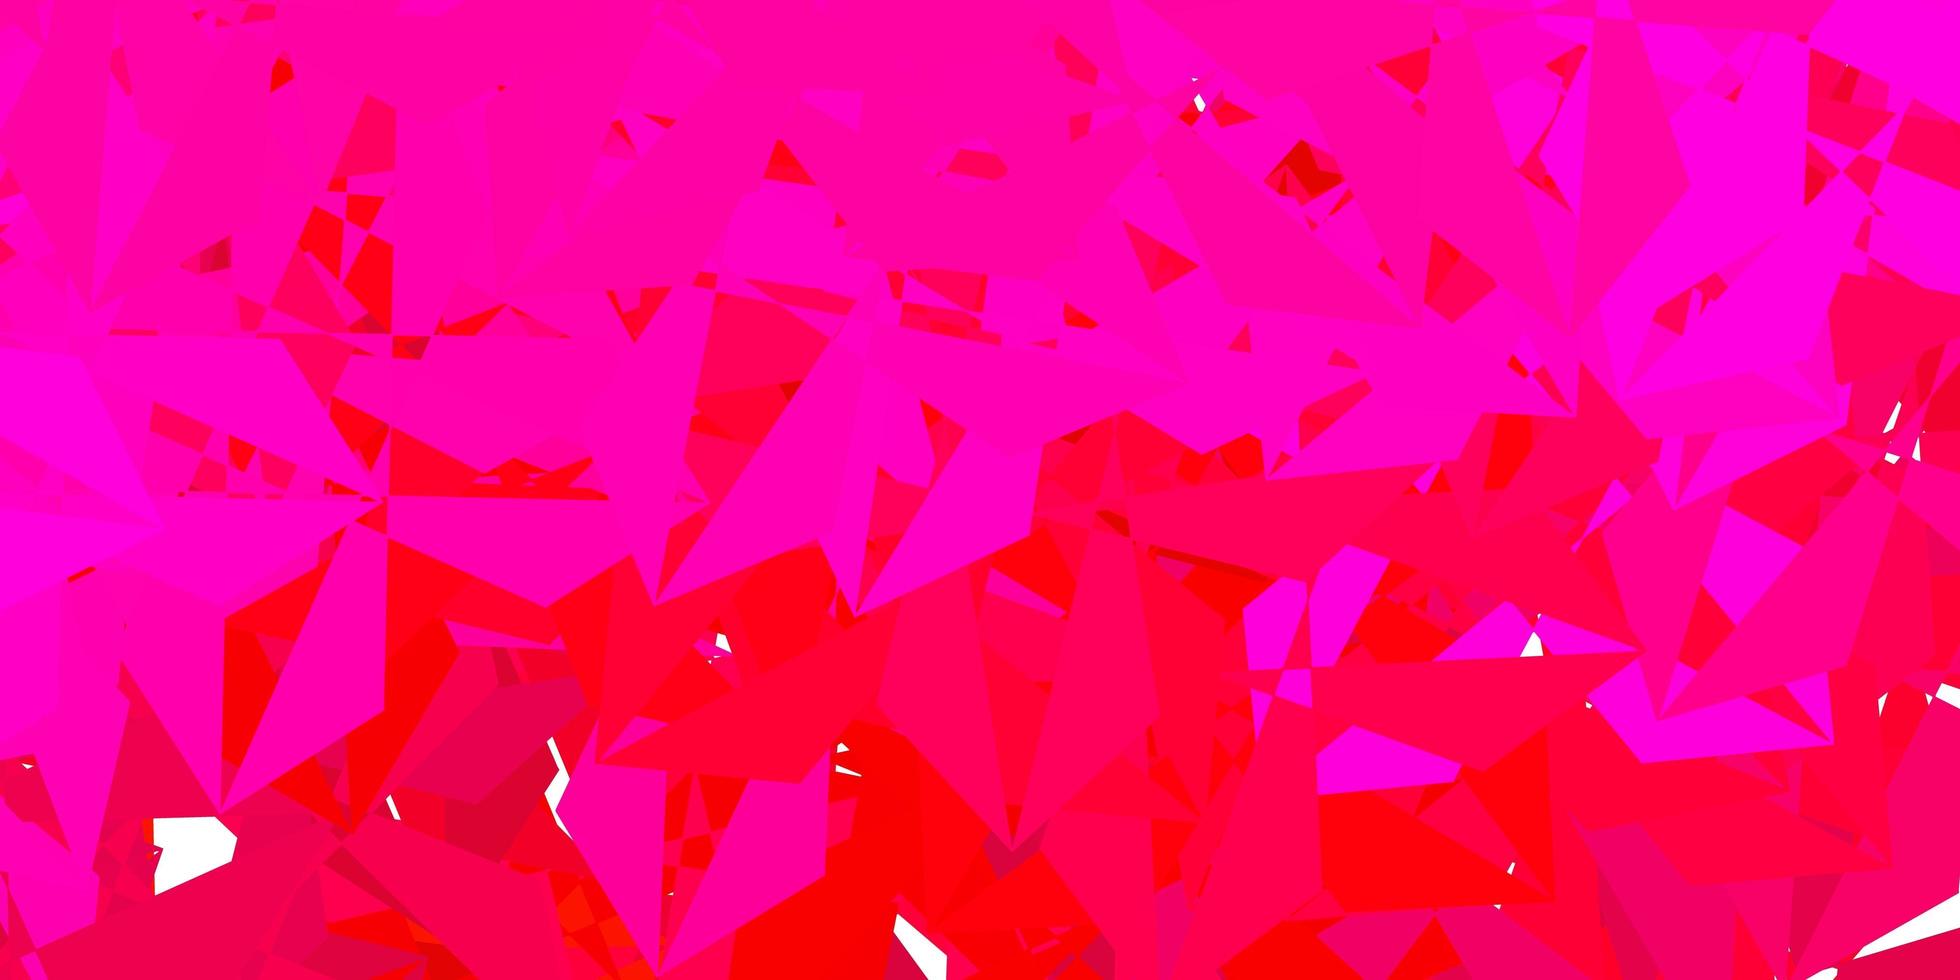 fundo poligonal do vetor rosa claro.